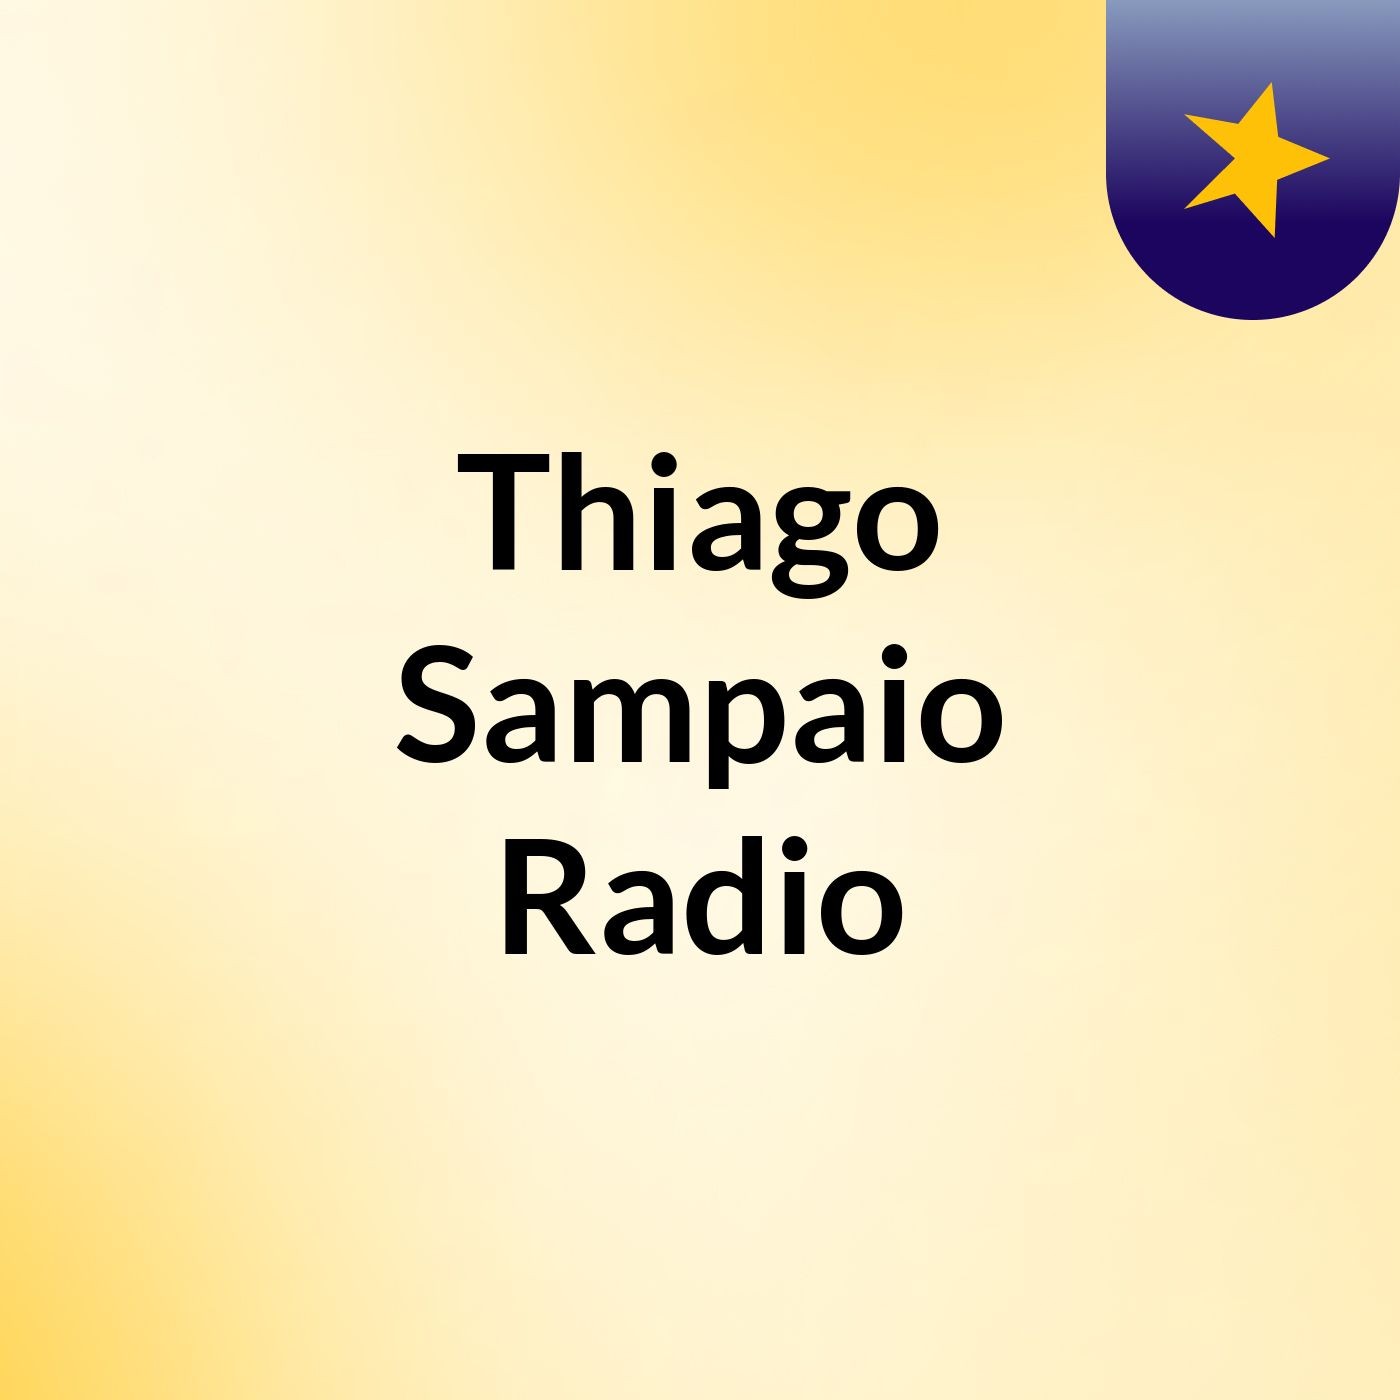 Thiago Sampaio Radio